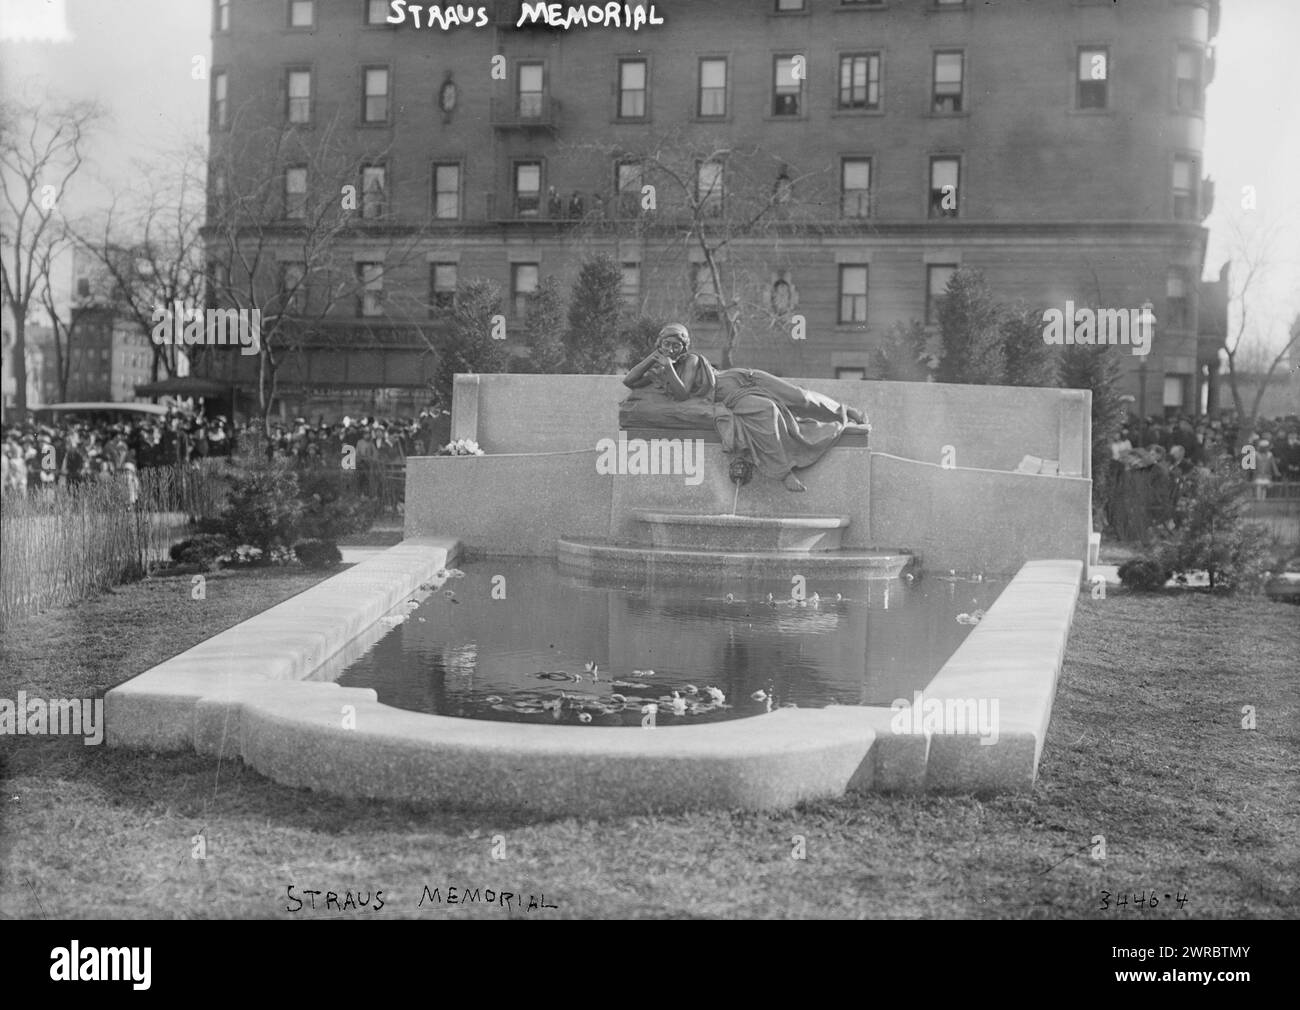 Straus Memorial, la fotografia mostra lo Straus Memorial Park a New York. Il memoriale e il parco sono stati dedicati il 15 aprile 1915, terzo anniversario della morte di Isidoro e Ida Straus sul Titanic., 1915 aprile 15, Glass negatives, 1 negative: Glass Foto Stock